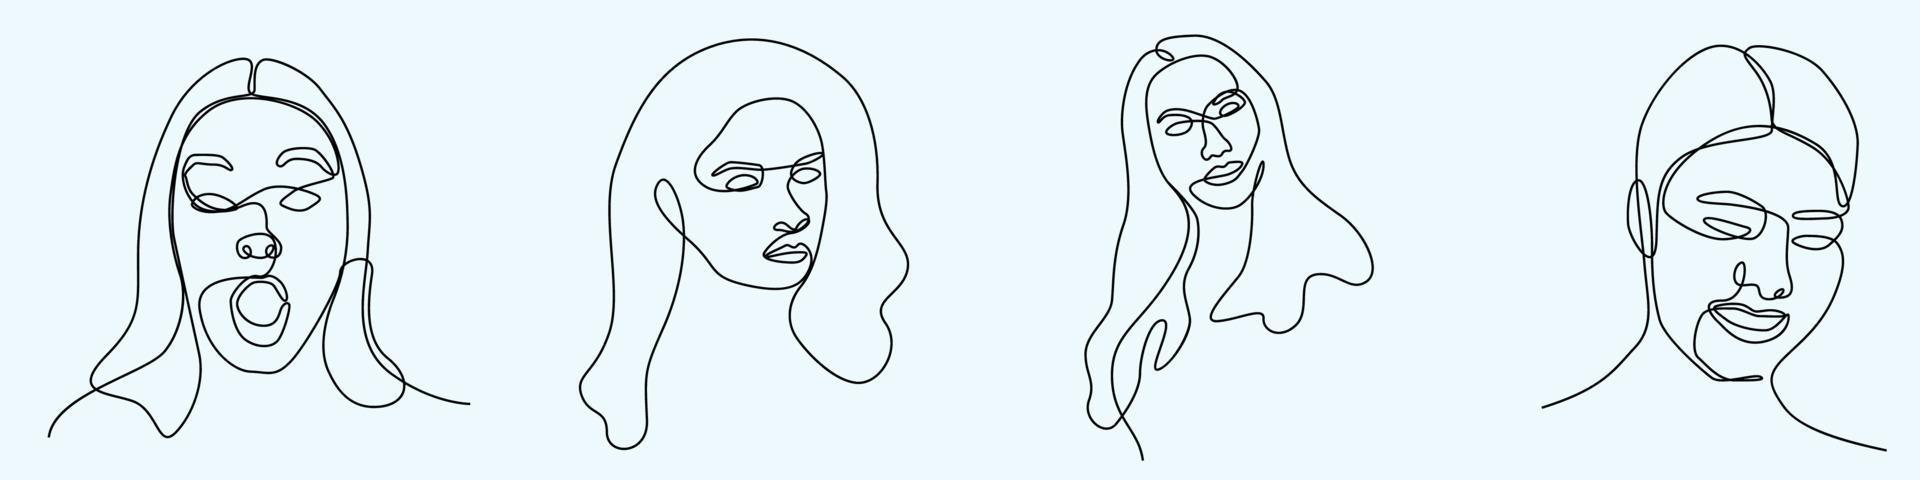 dessin à la main continu d'une ligne de visage de femme dessin au trait féminin vecteur